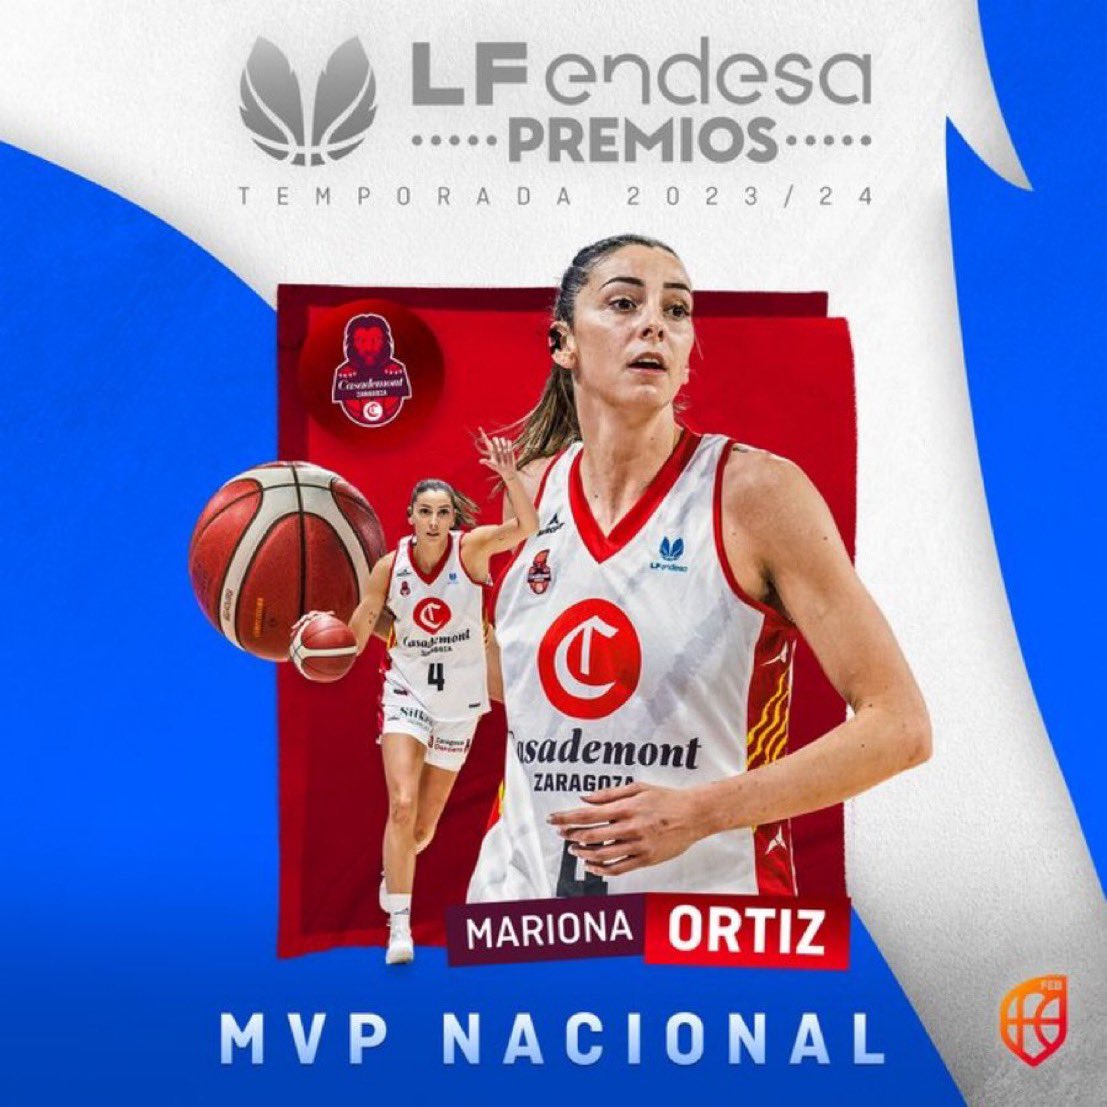 𝙈𝙑𝙋, 𝙈𝙑𝙋, 𝙈𝙑𝙋 🎶 Mariona Ortiz es la MVP Nacional de la temporada #LFEndesa 2023/2024 Enhorabuena @marionaortiz8 👑